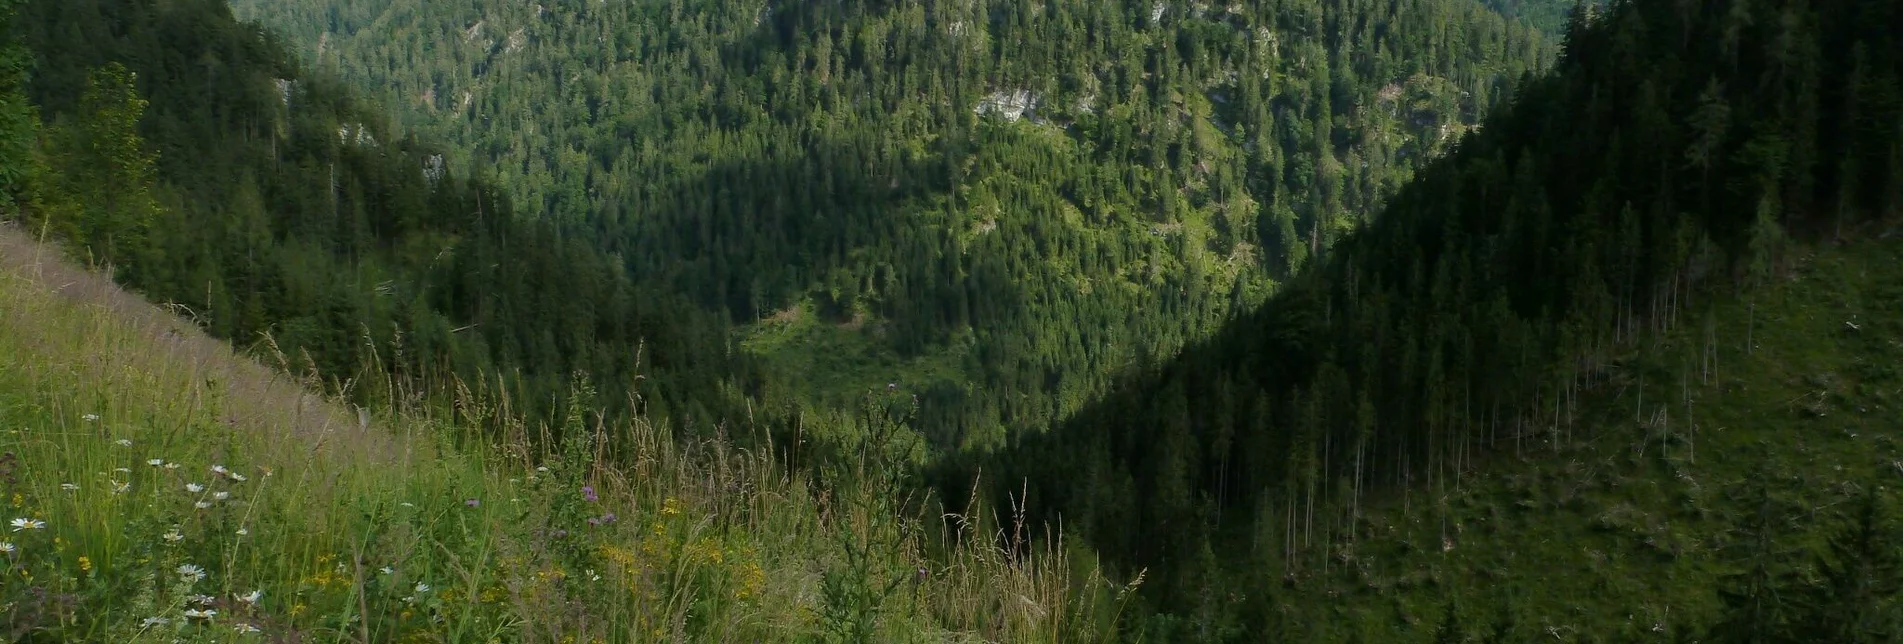 Wanderung Höhenweg Wildalpen - Hinterwildalpen - Touren-Impression #1 | © Tourismusverband Wildalpen